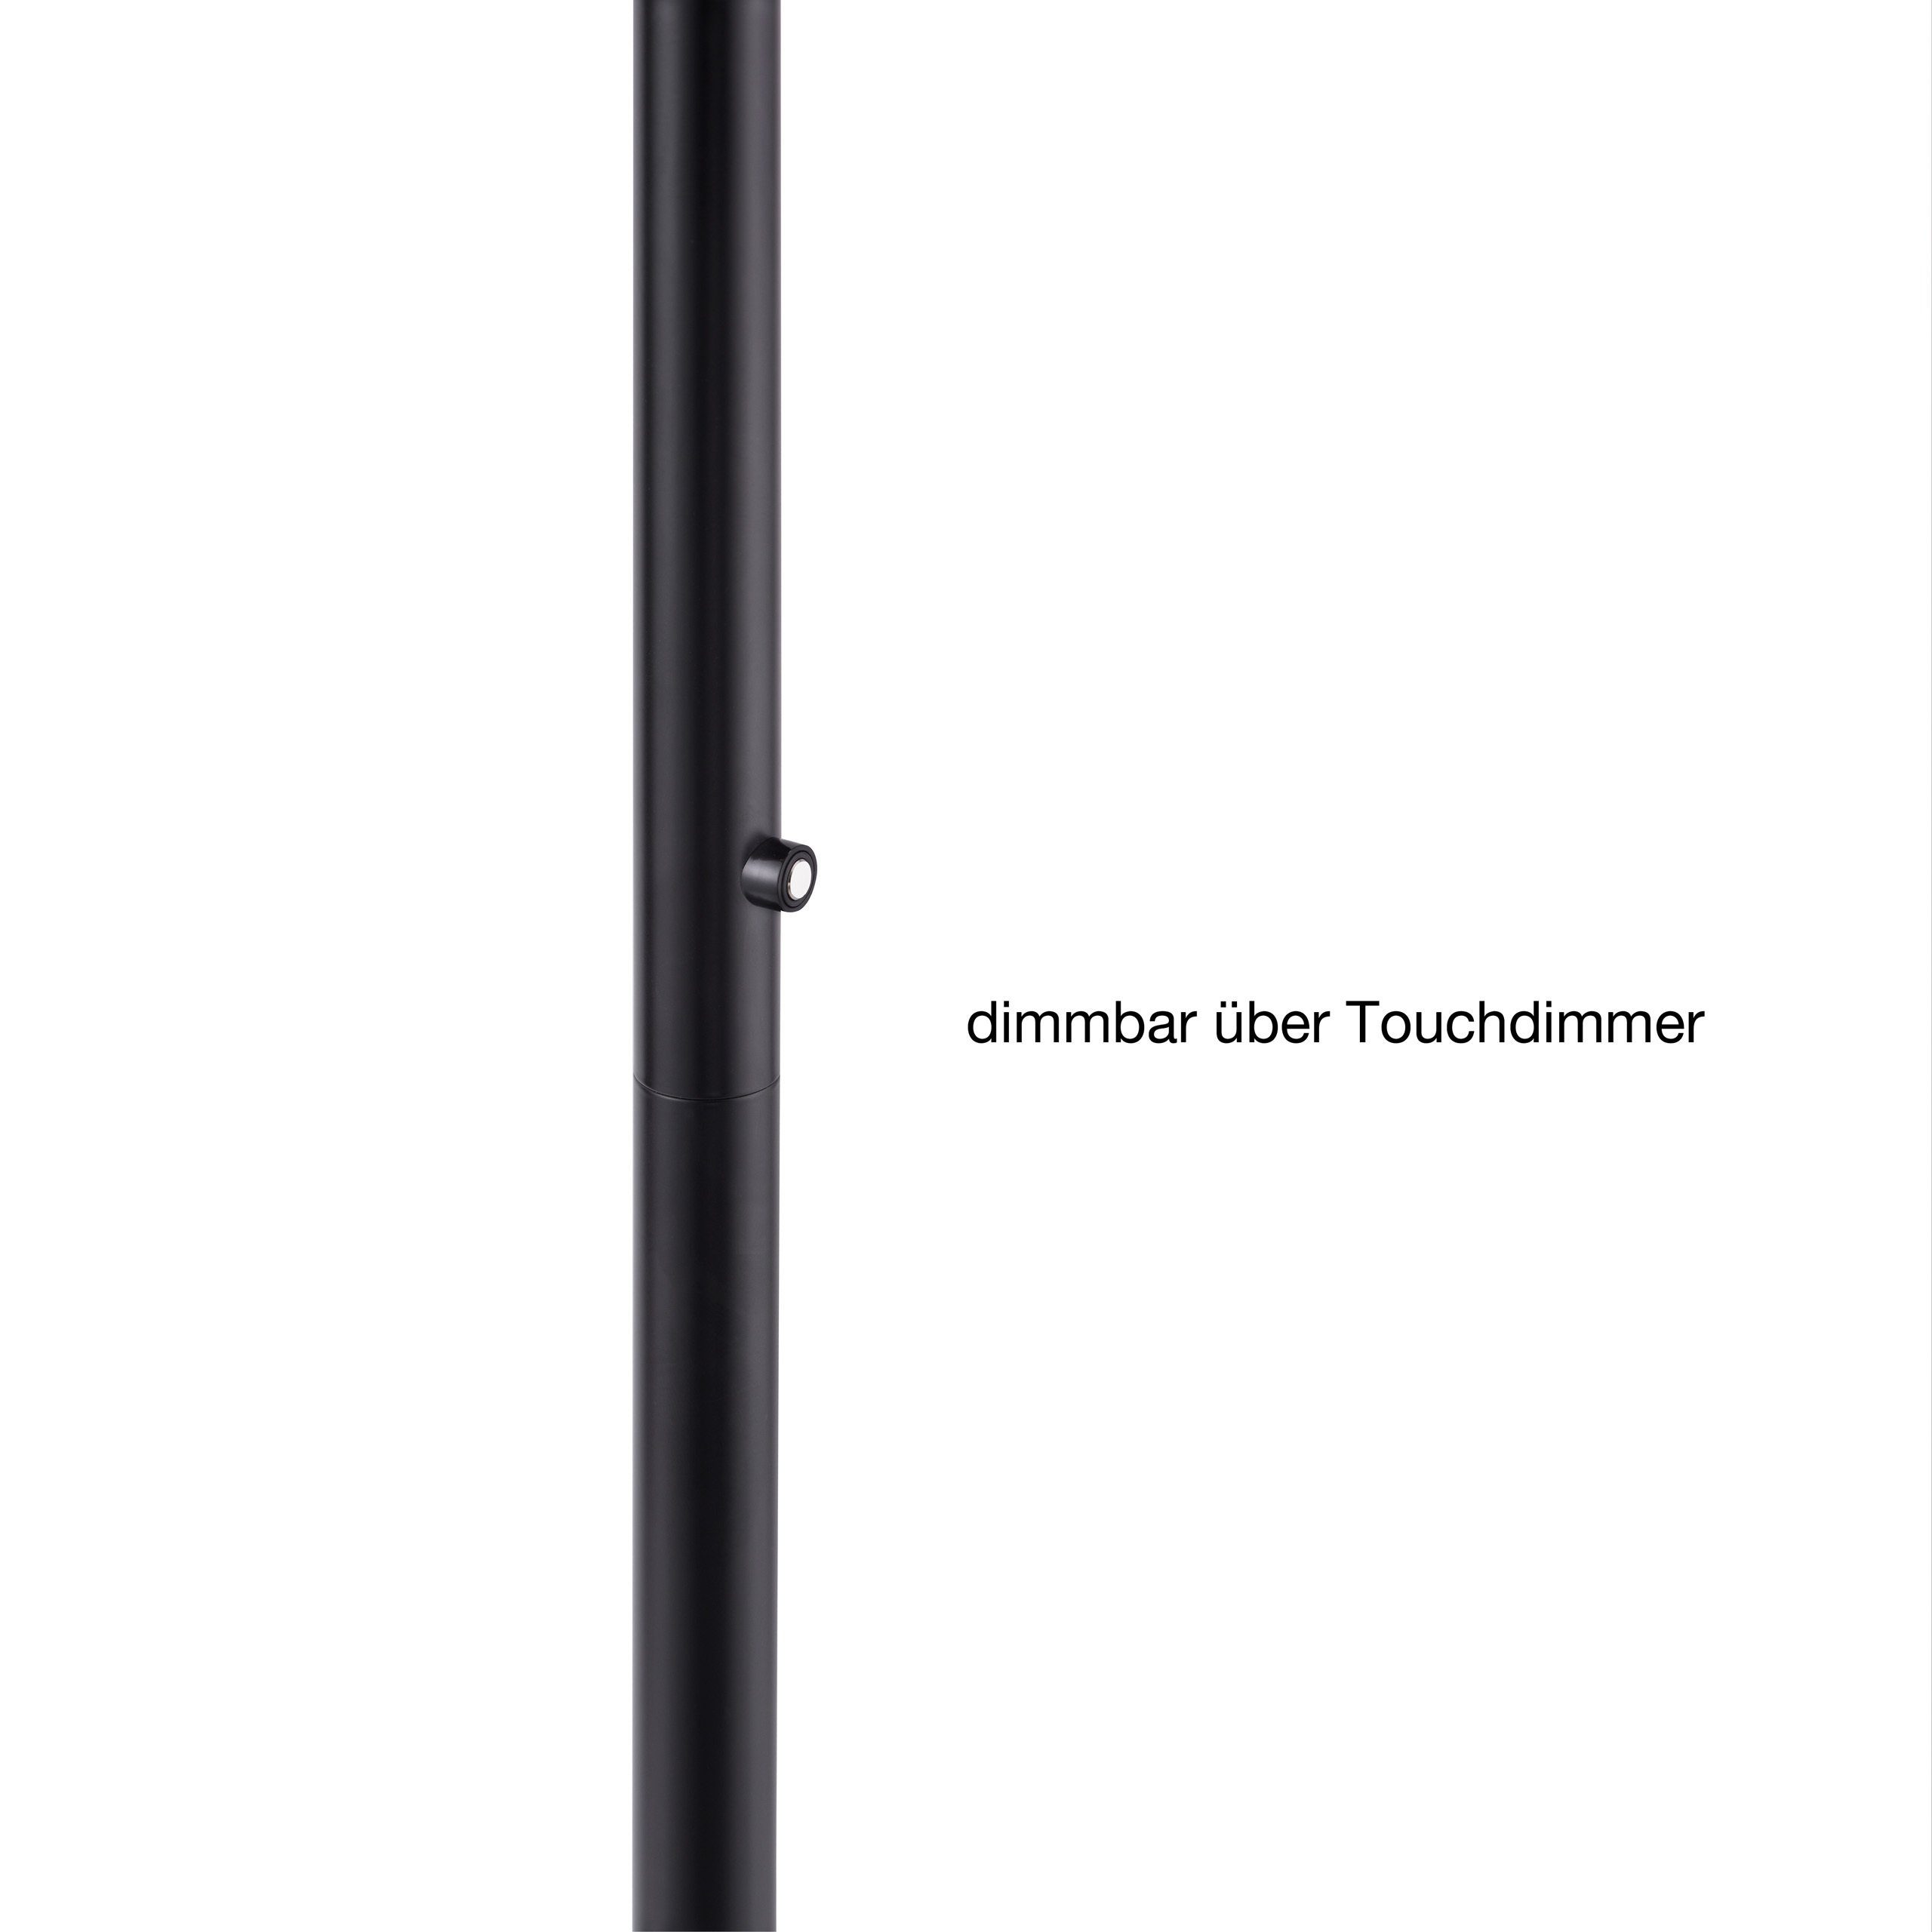 SellTec LED Deckenfluter LED Fluter Watt, Touchdimmer, 22 dimmbar 1xLED-Board warmweiß, Deckenfluter Touchdimmer, über / schwarz, über dimmbar rund, platzsparend